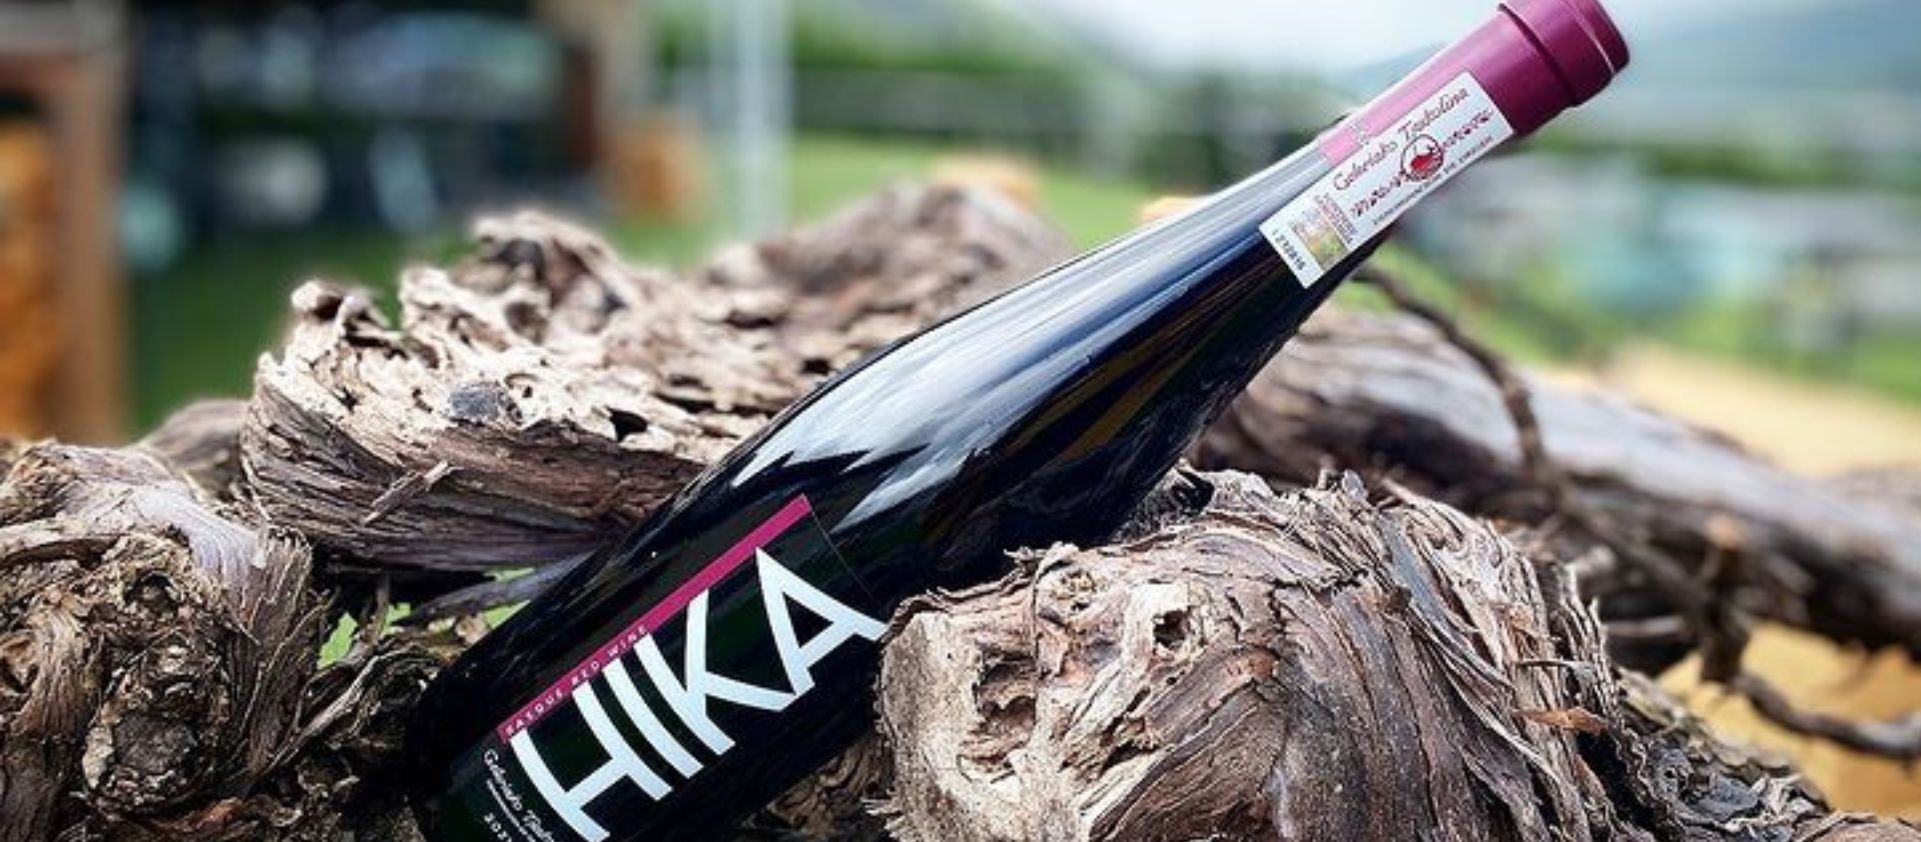  Descubriendo HIKA Txakolina: Innovación y tradición en los viñedos de Guipúzcoa